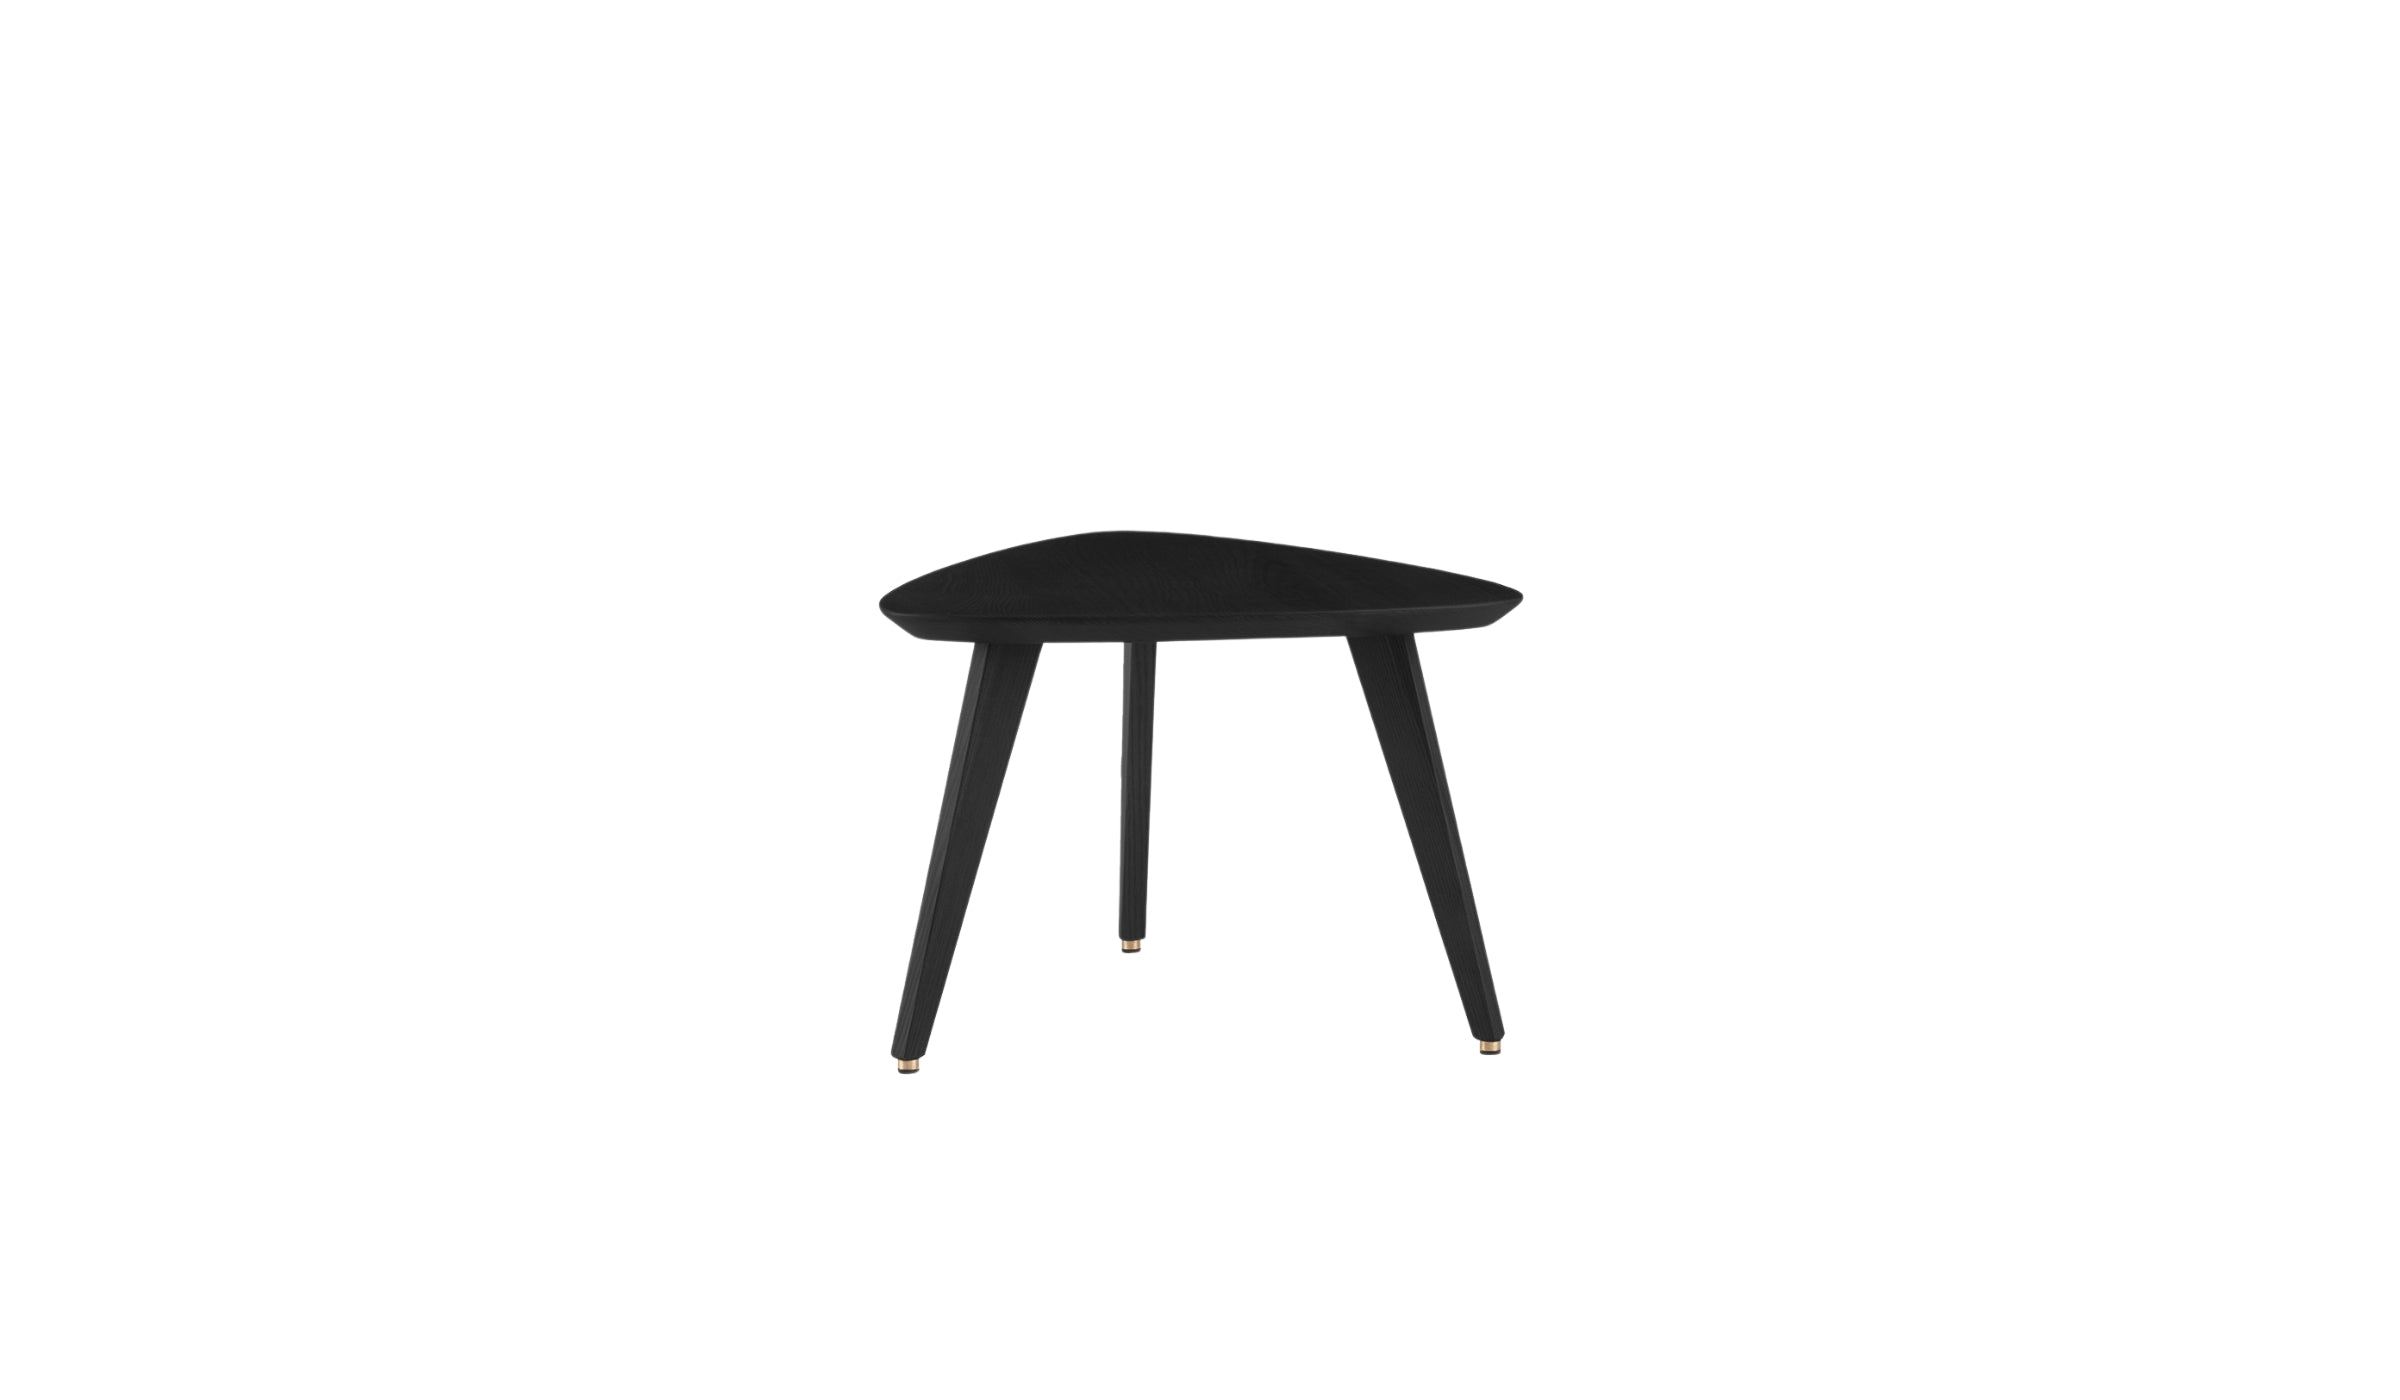 Table basse-366 - Table basse, S, chêne noir--NOVINEA-366 CONCEPT